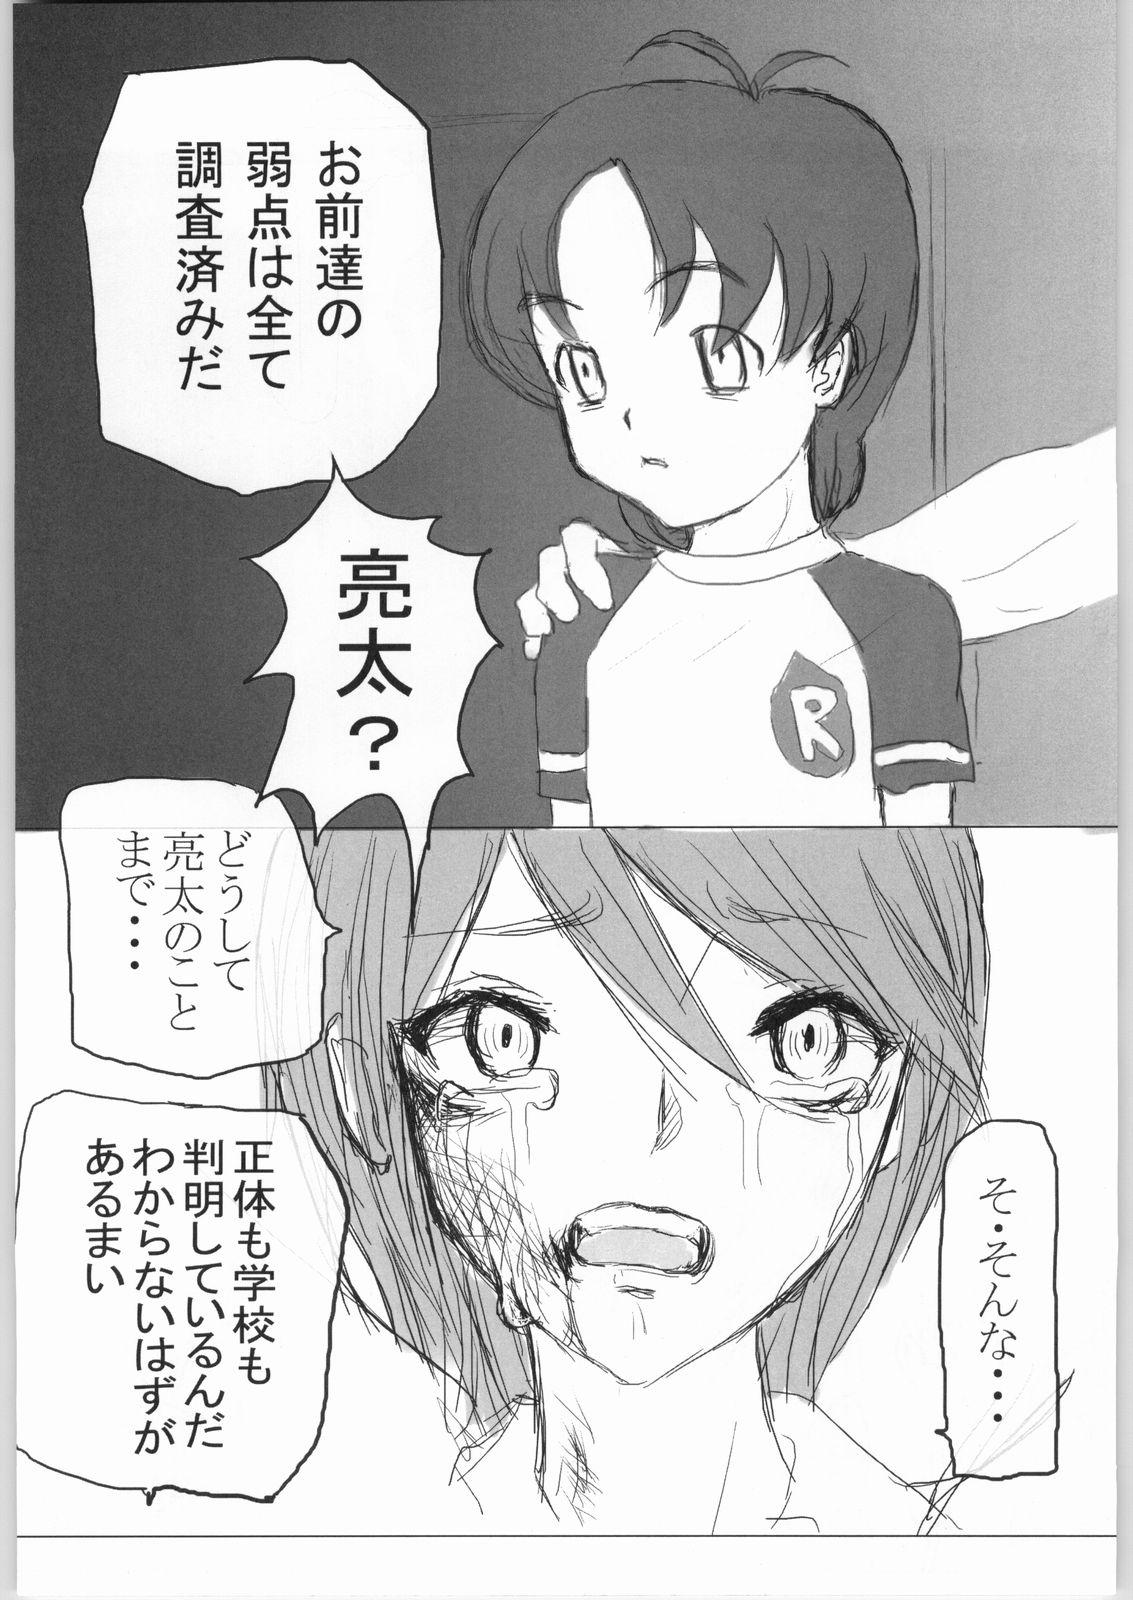 Milk Kuro - Futari wa pretty cure | futari wa precure Gay Shaved - Page 6